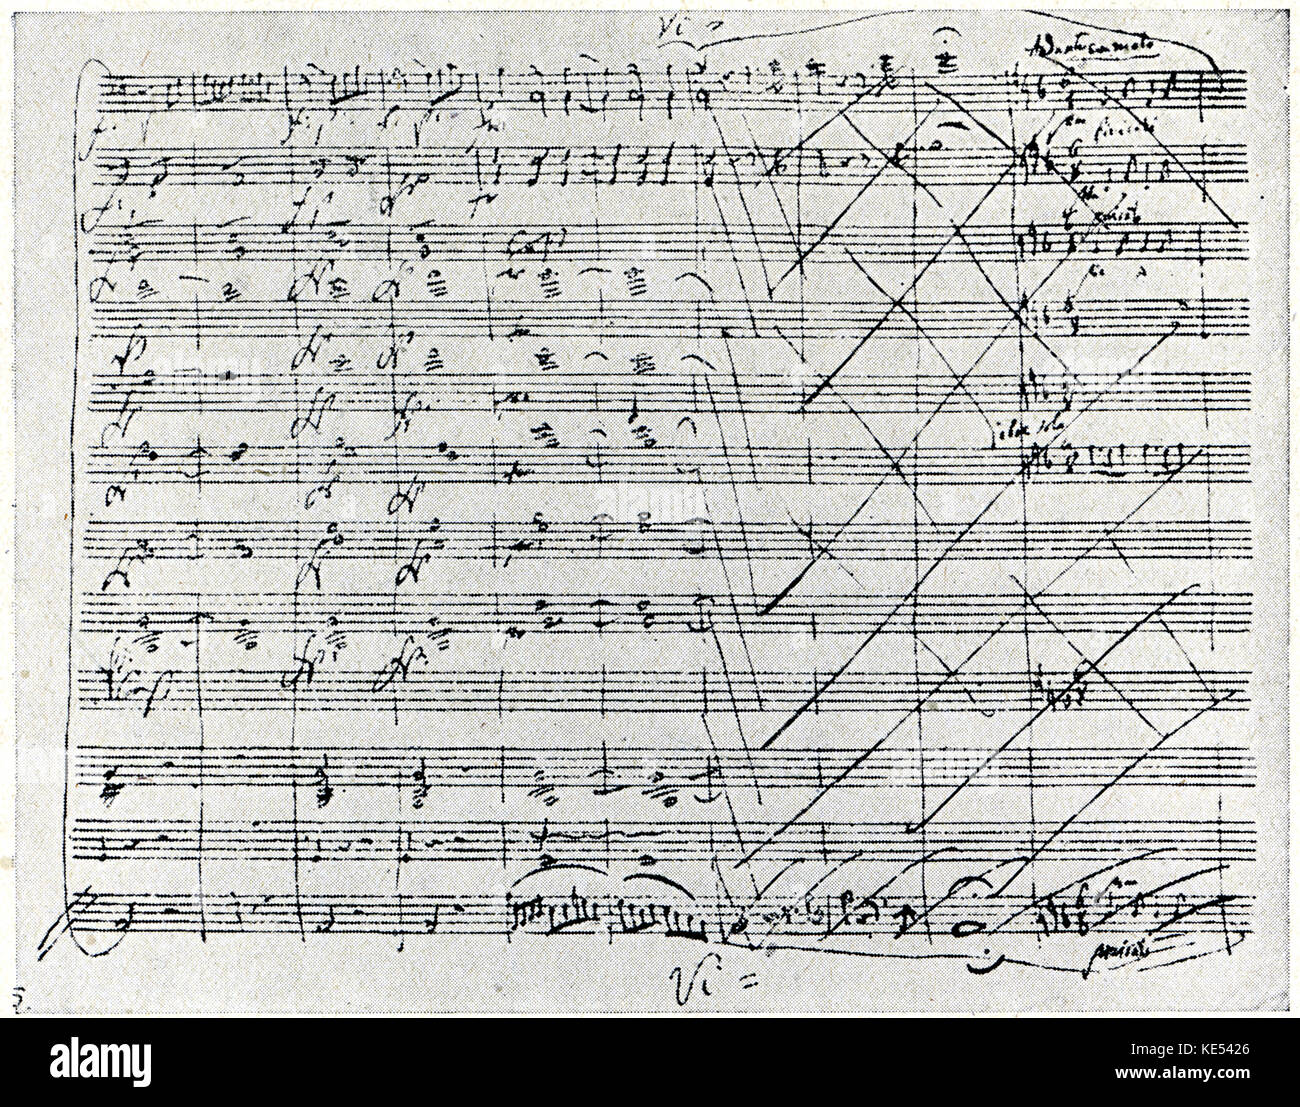 Mozart 's Nozze di Figaro - manoscritto originale , K492. Opera comica composta da Mozart, 1786. Wolfgang Amadeus Mozart: Il compositore austriaco, 27 Gennaio 1756 - 5 dicembre 1791. Foto Stock